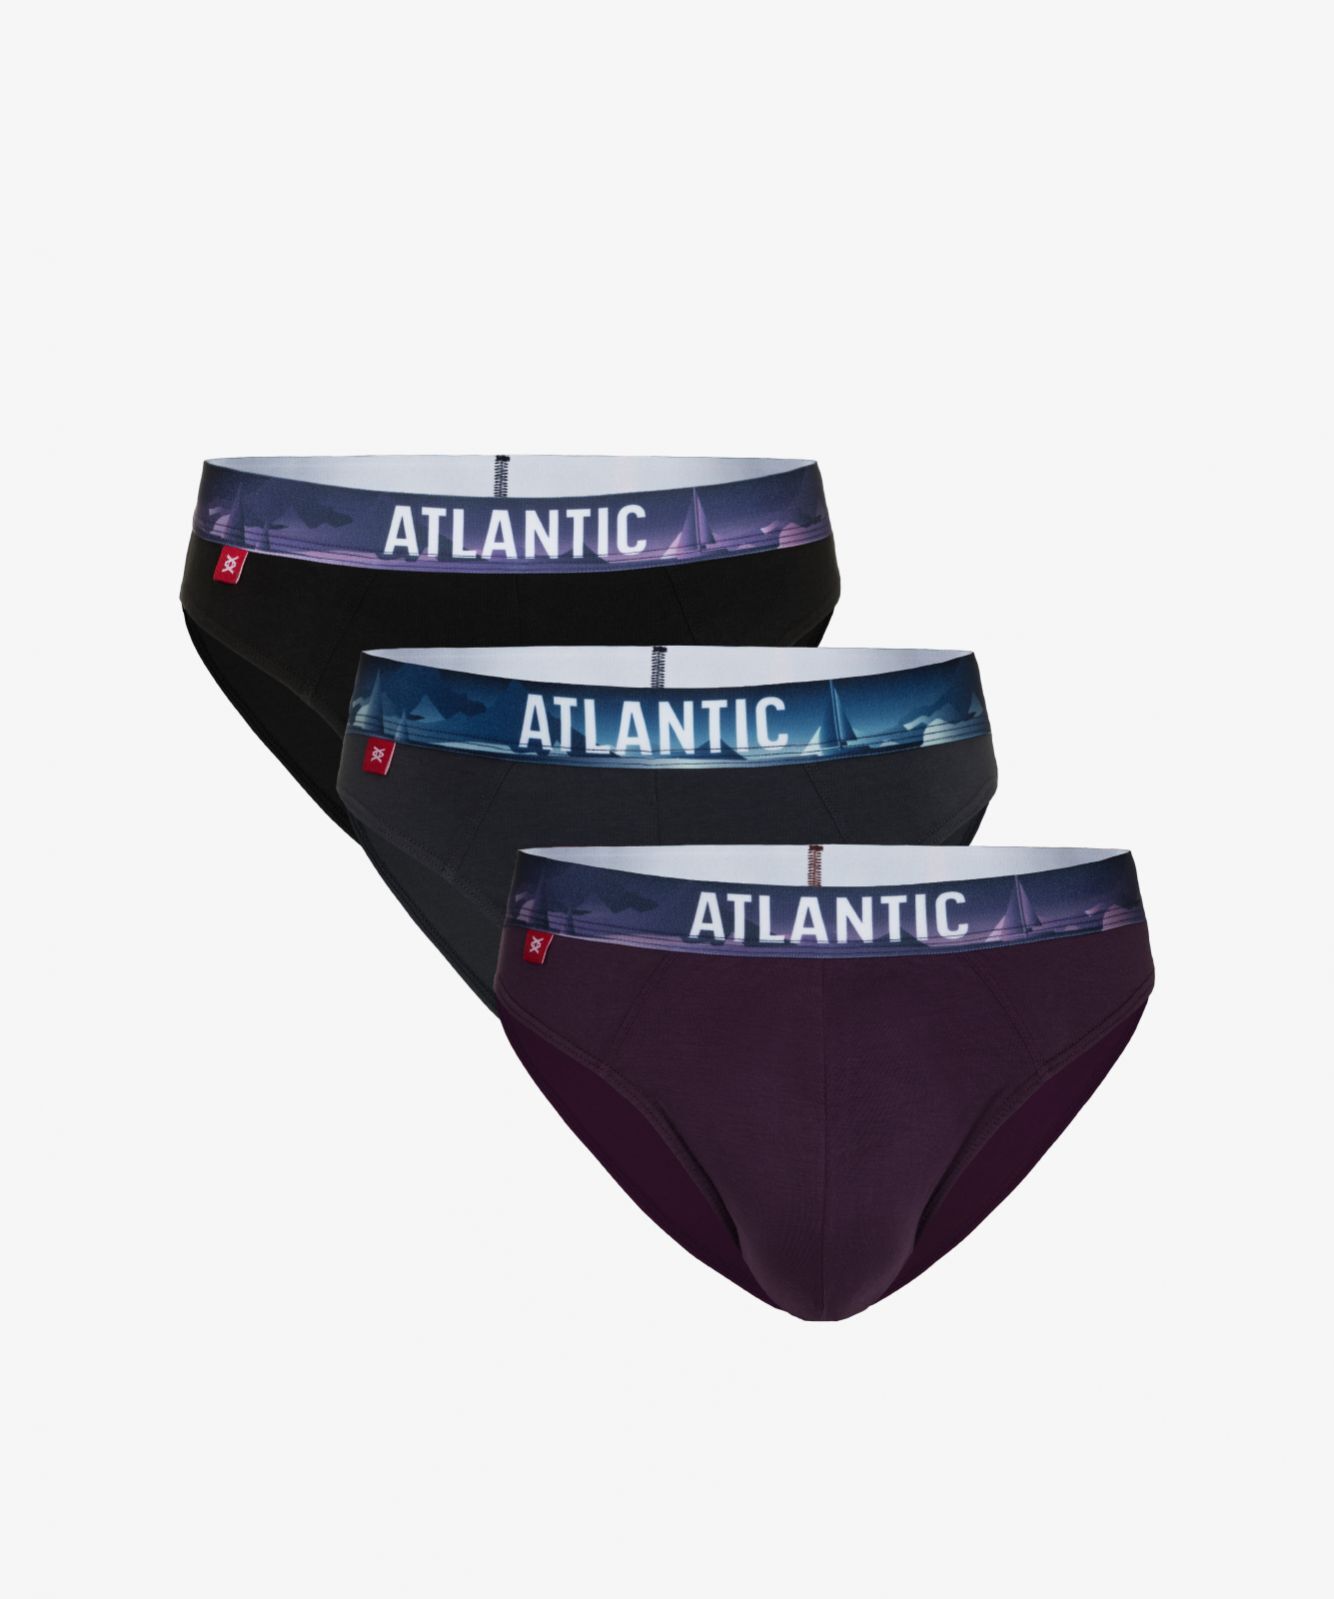 Мужские трусы слипы спорт Atlantic, набор 3 шт., хлопок, черные + графит + темно-фиолетовые, 3MP-139